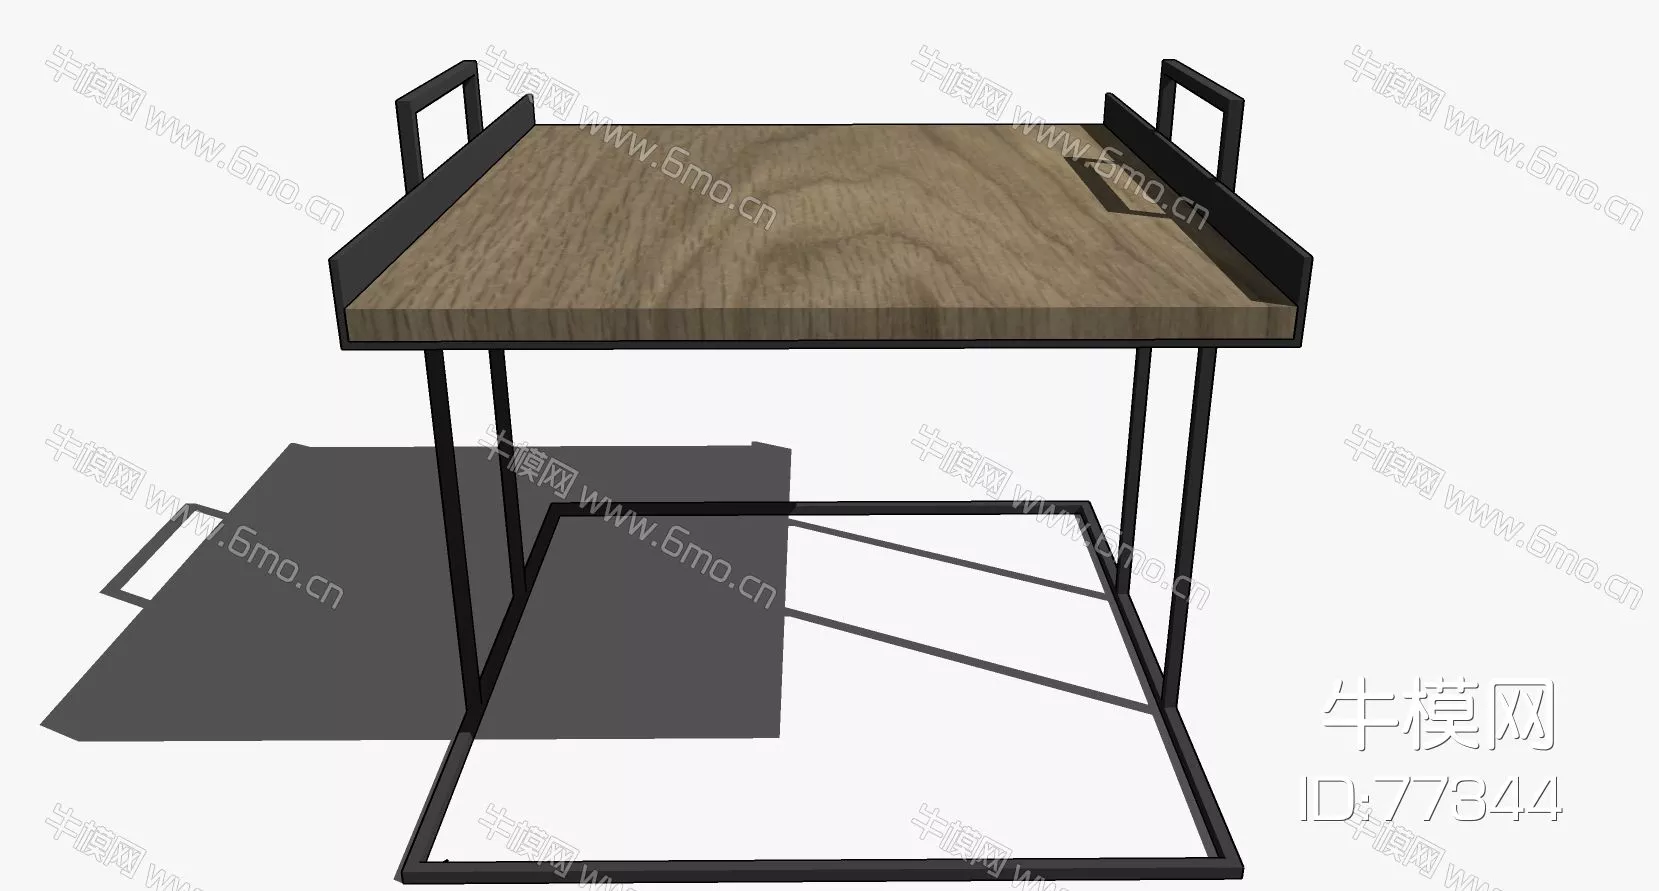 NORDIC SIDE TABLE - SKETCHUP 3D MODEL - ENSCAPE - 77344